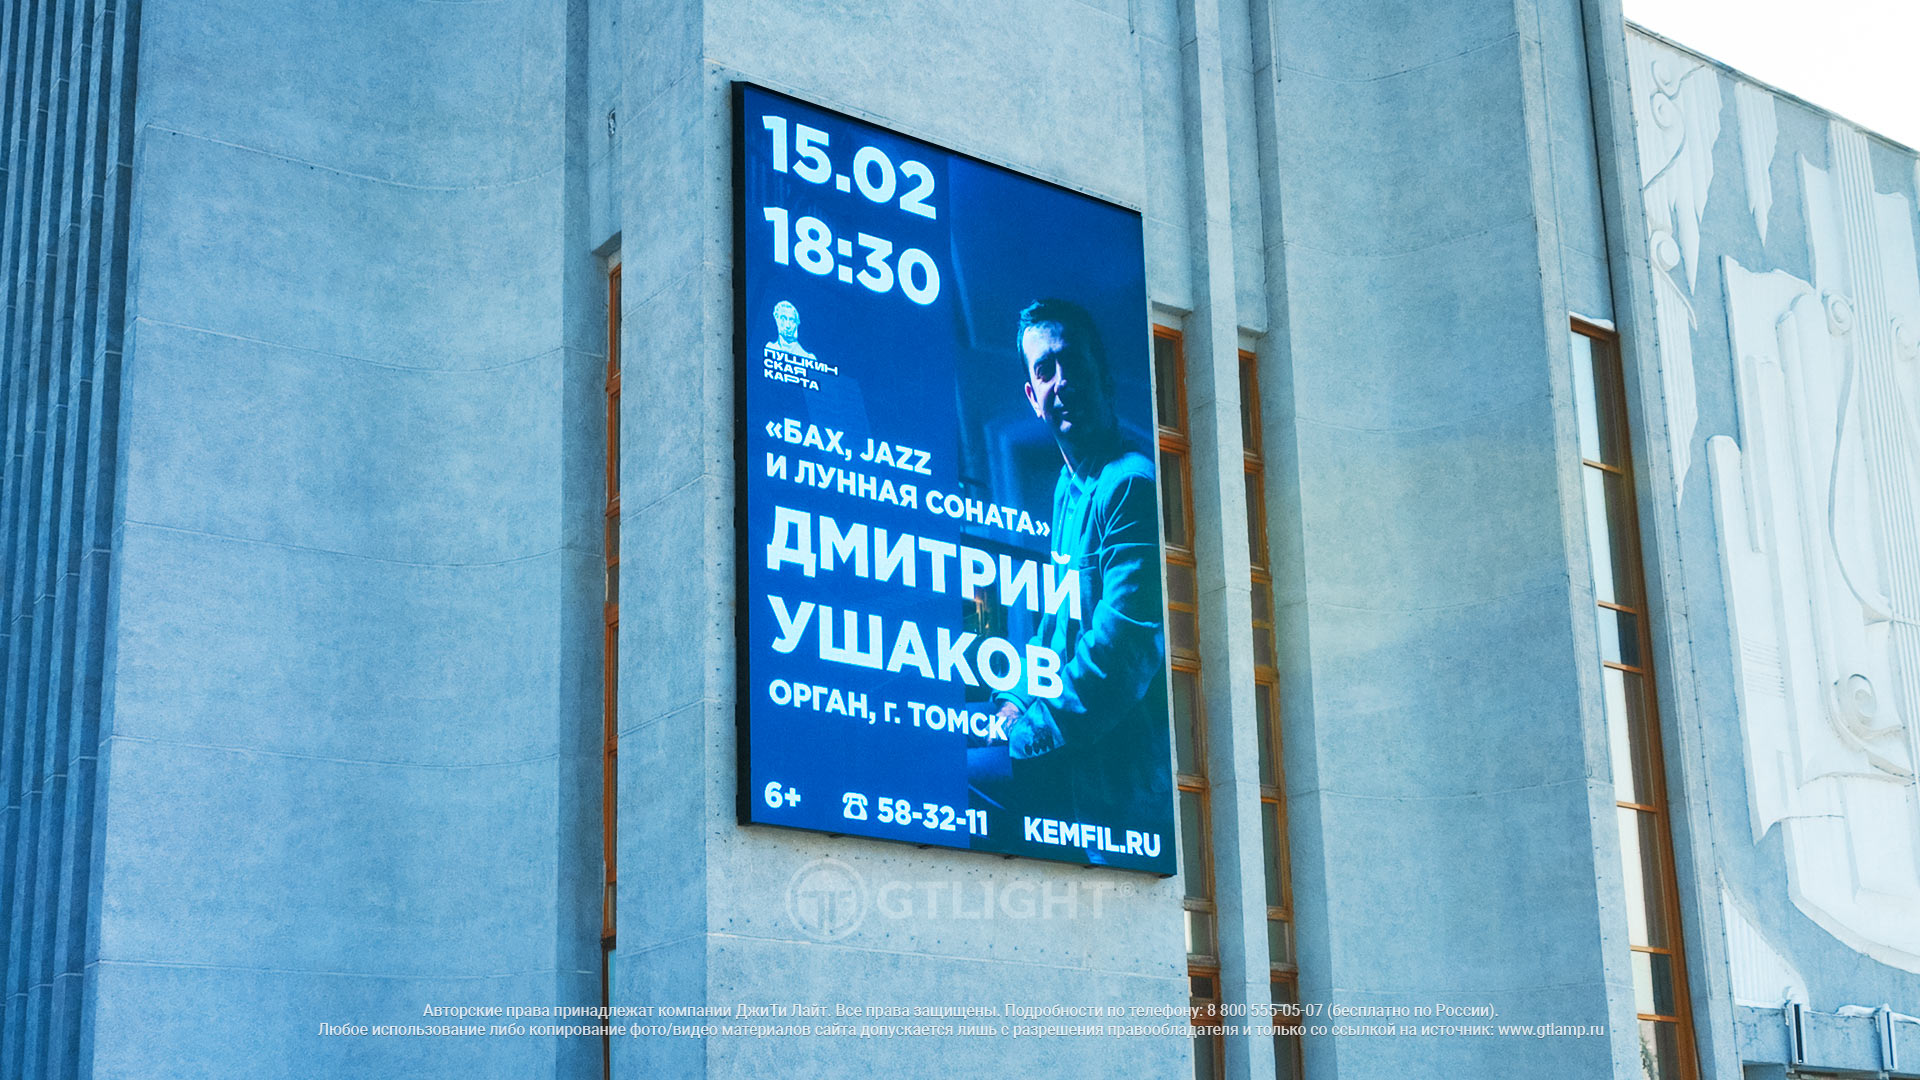 Светодиодный экран на фасад здания, Кемерово, ГАУК «Филармония Кузбасса»